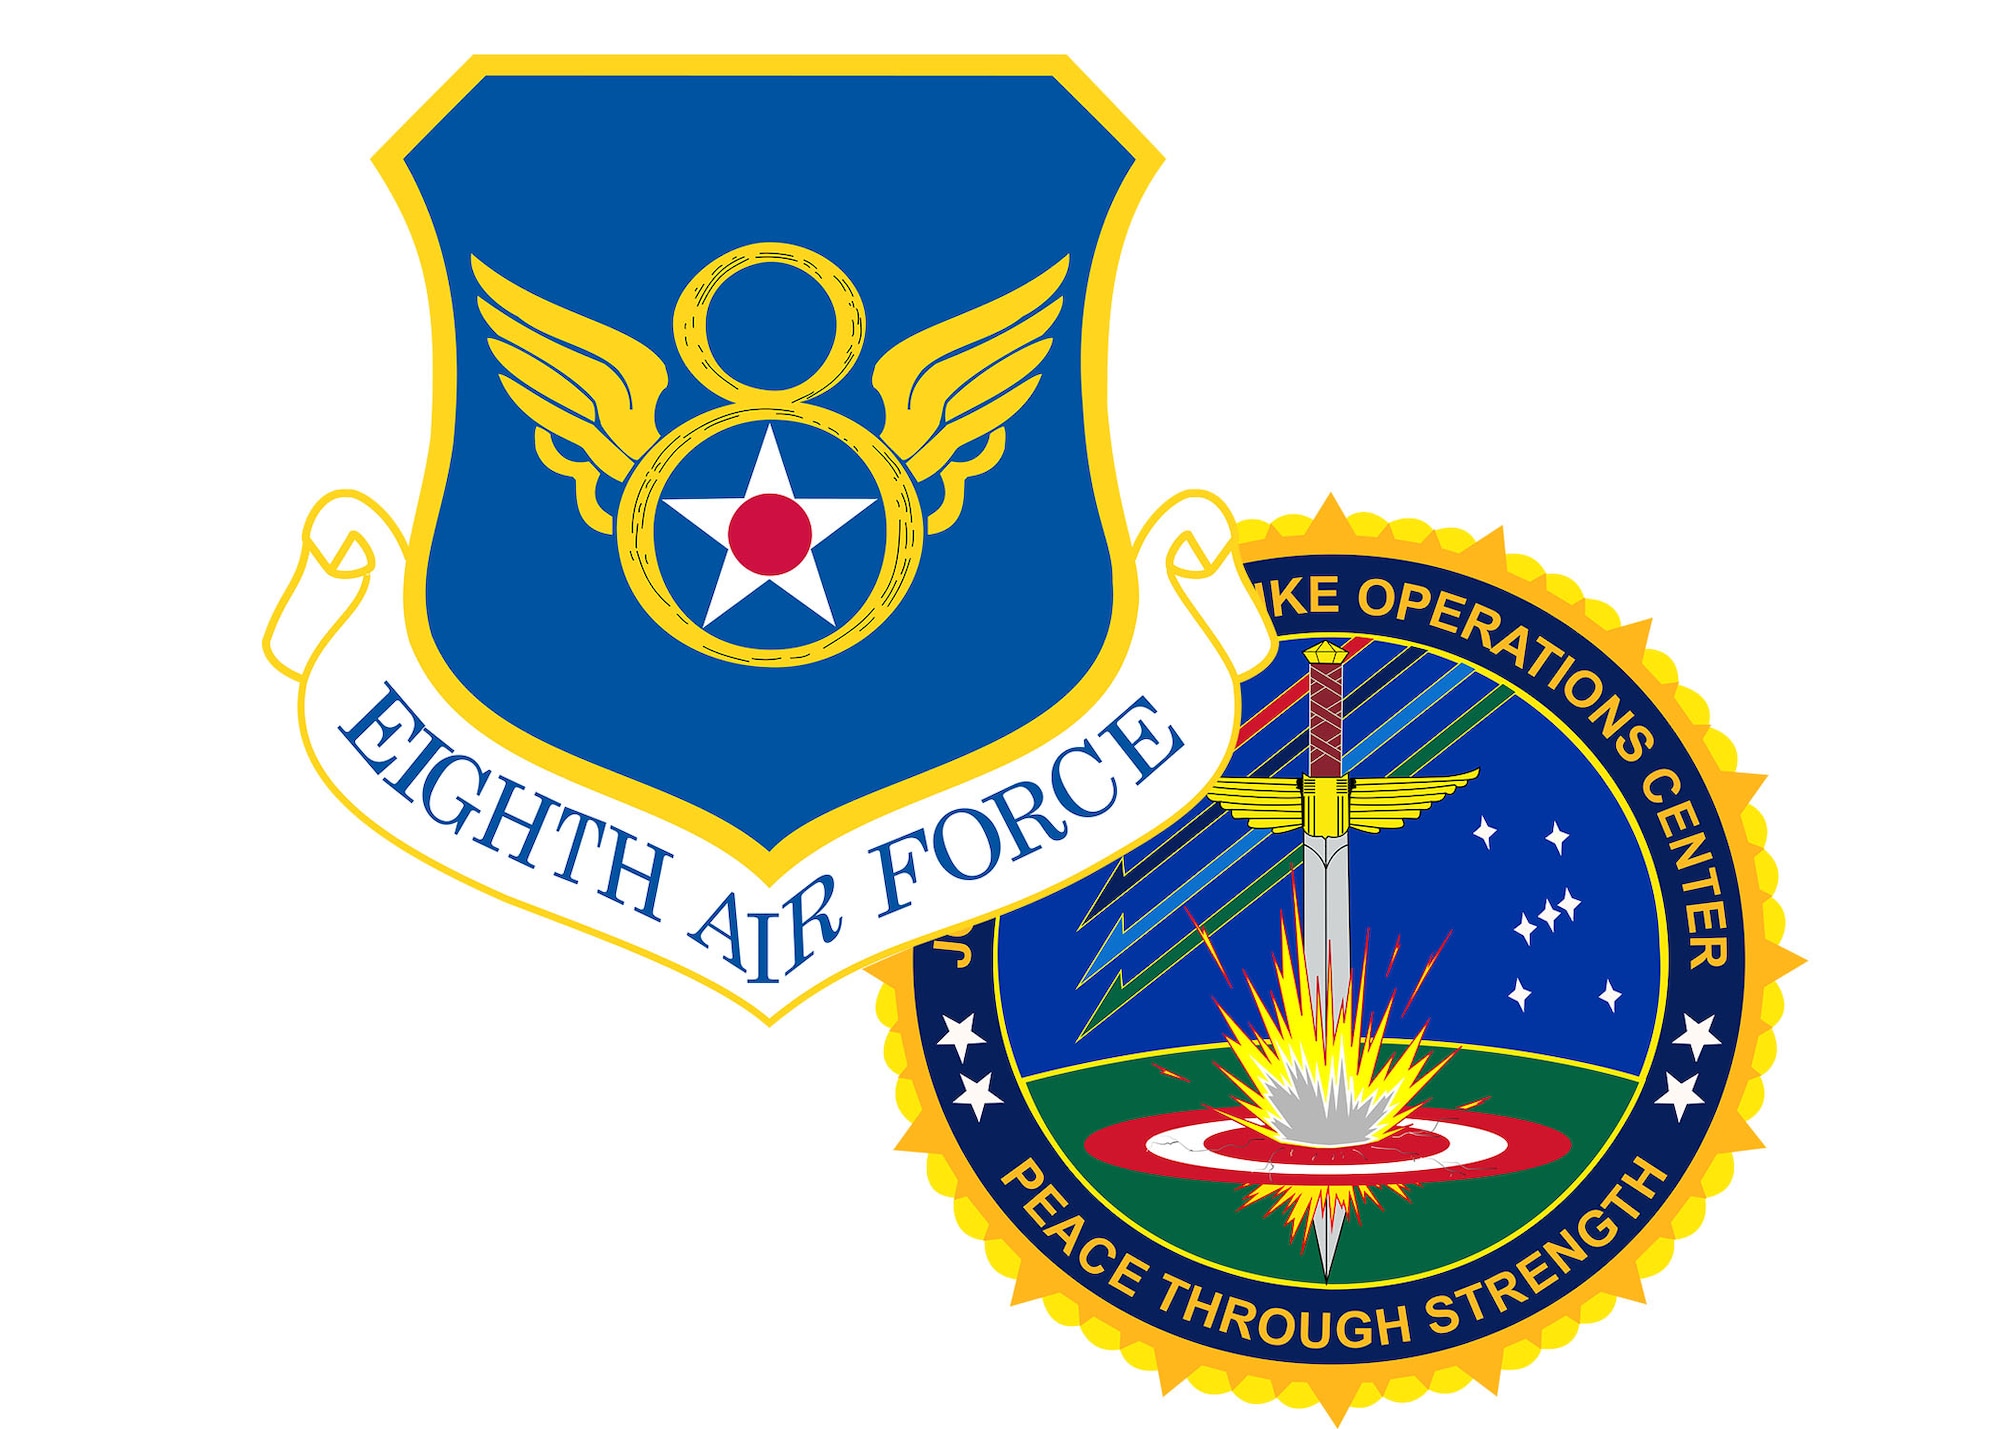 8 AF/J-GSOC logo